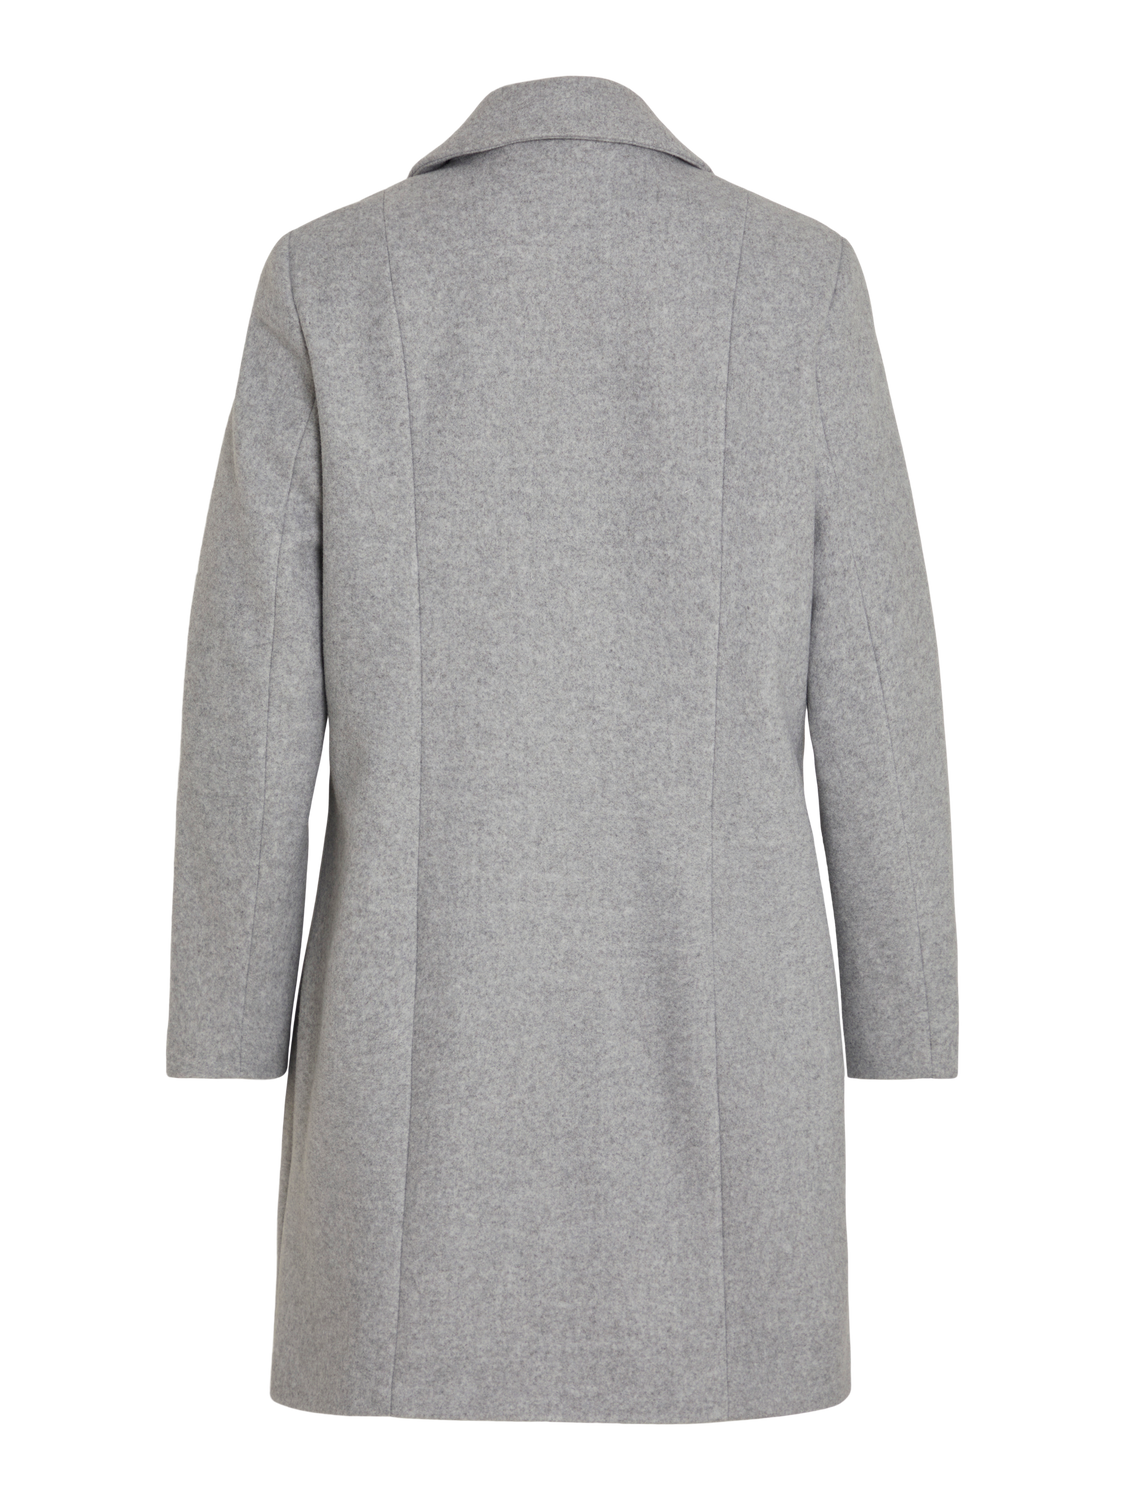 VICLAUDIA Coat - Light Grey Melange